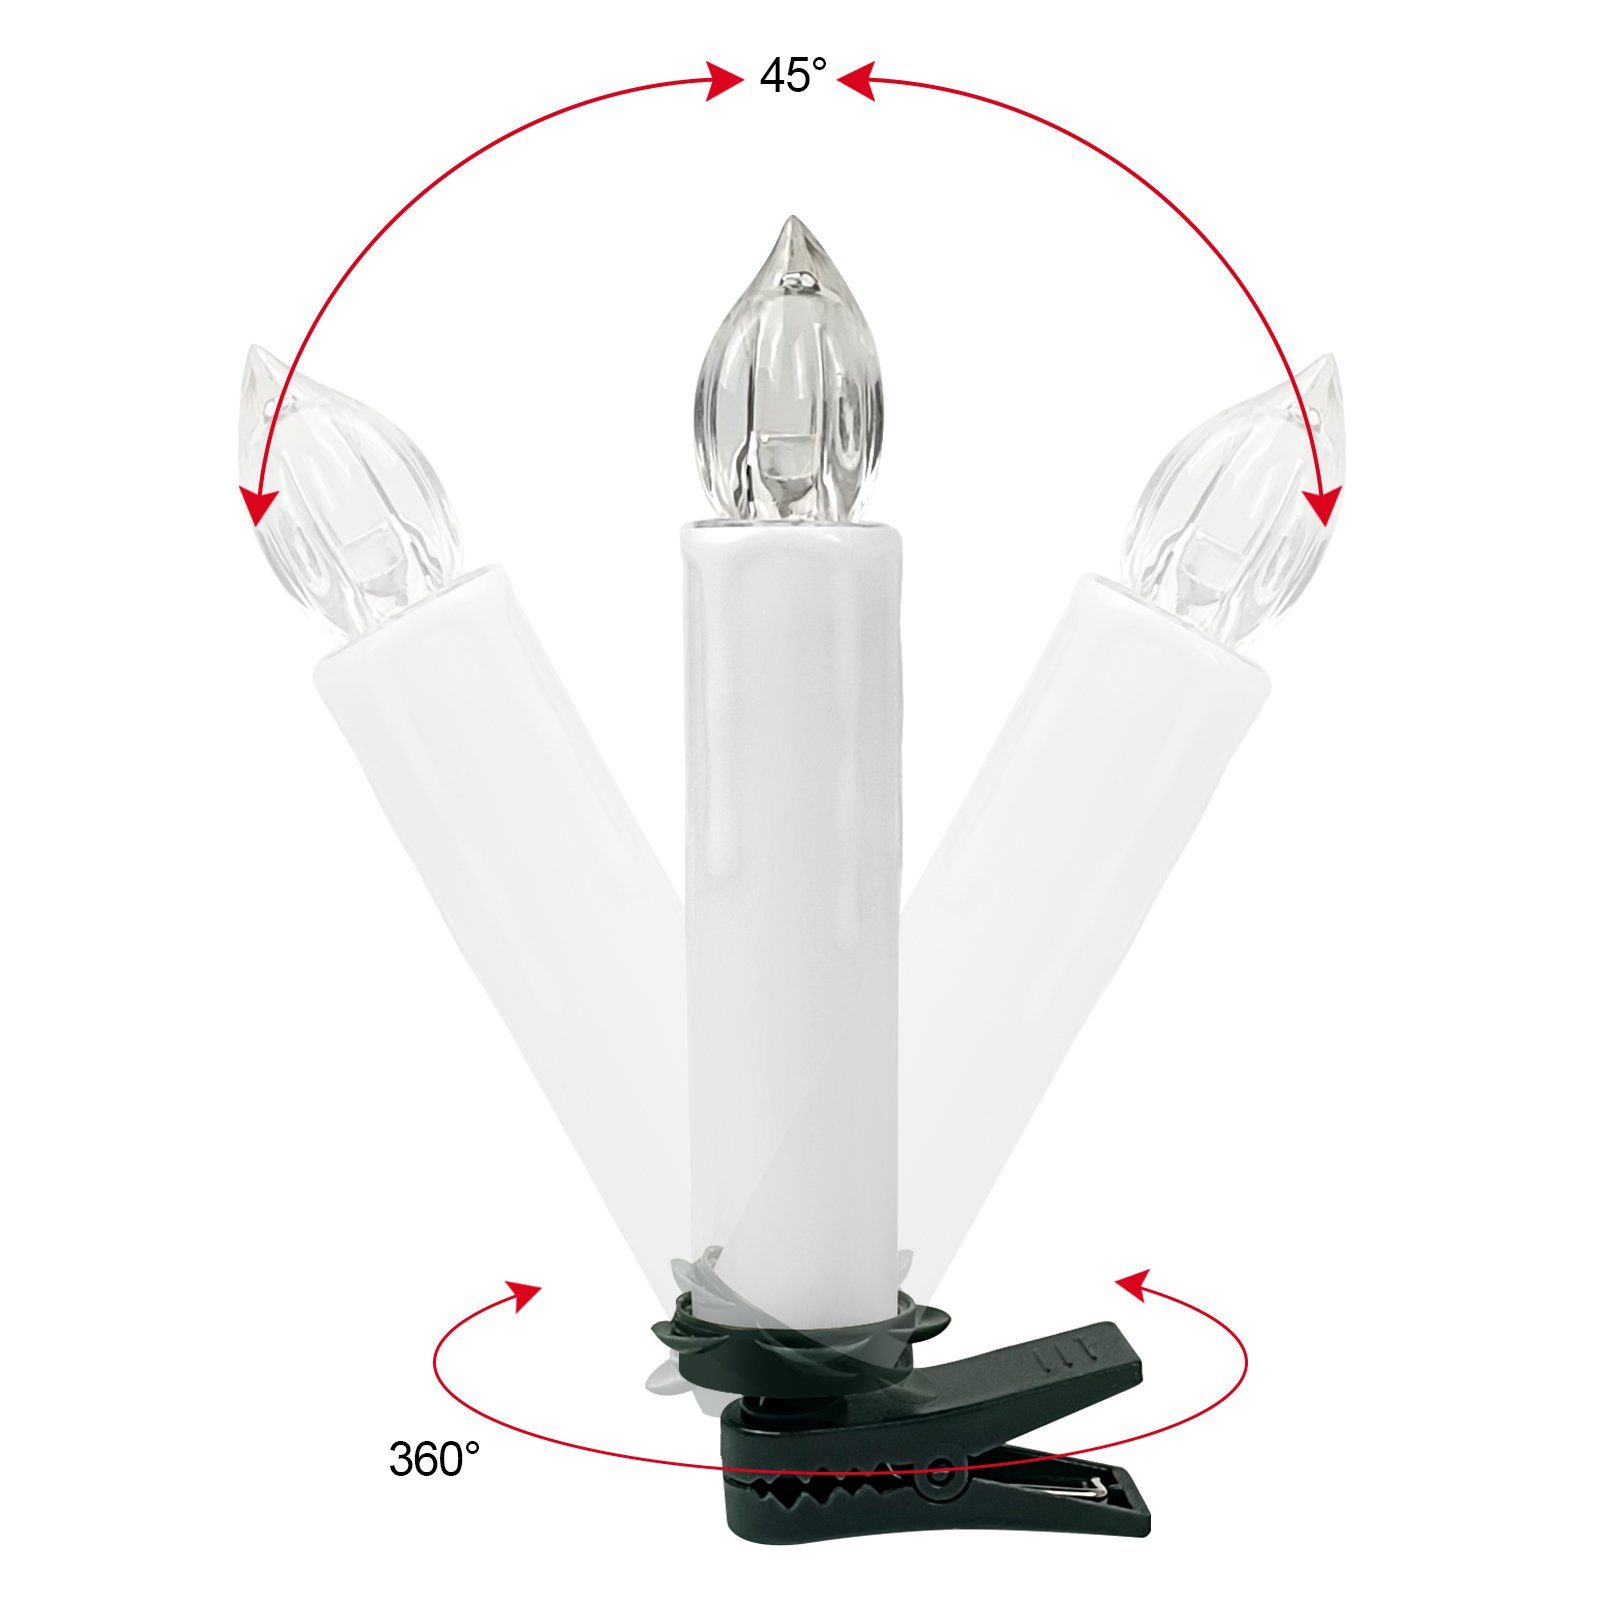 OZAVO CH010-WE 10 Weiß kabellose LED LED-Kerze Weihnachtskerzen, Weiß